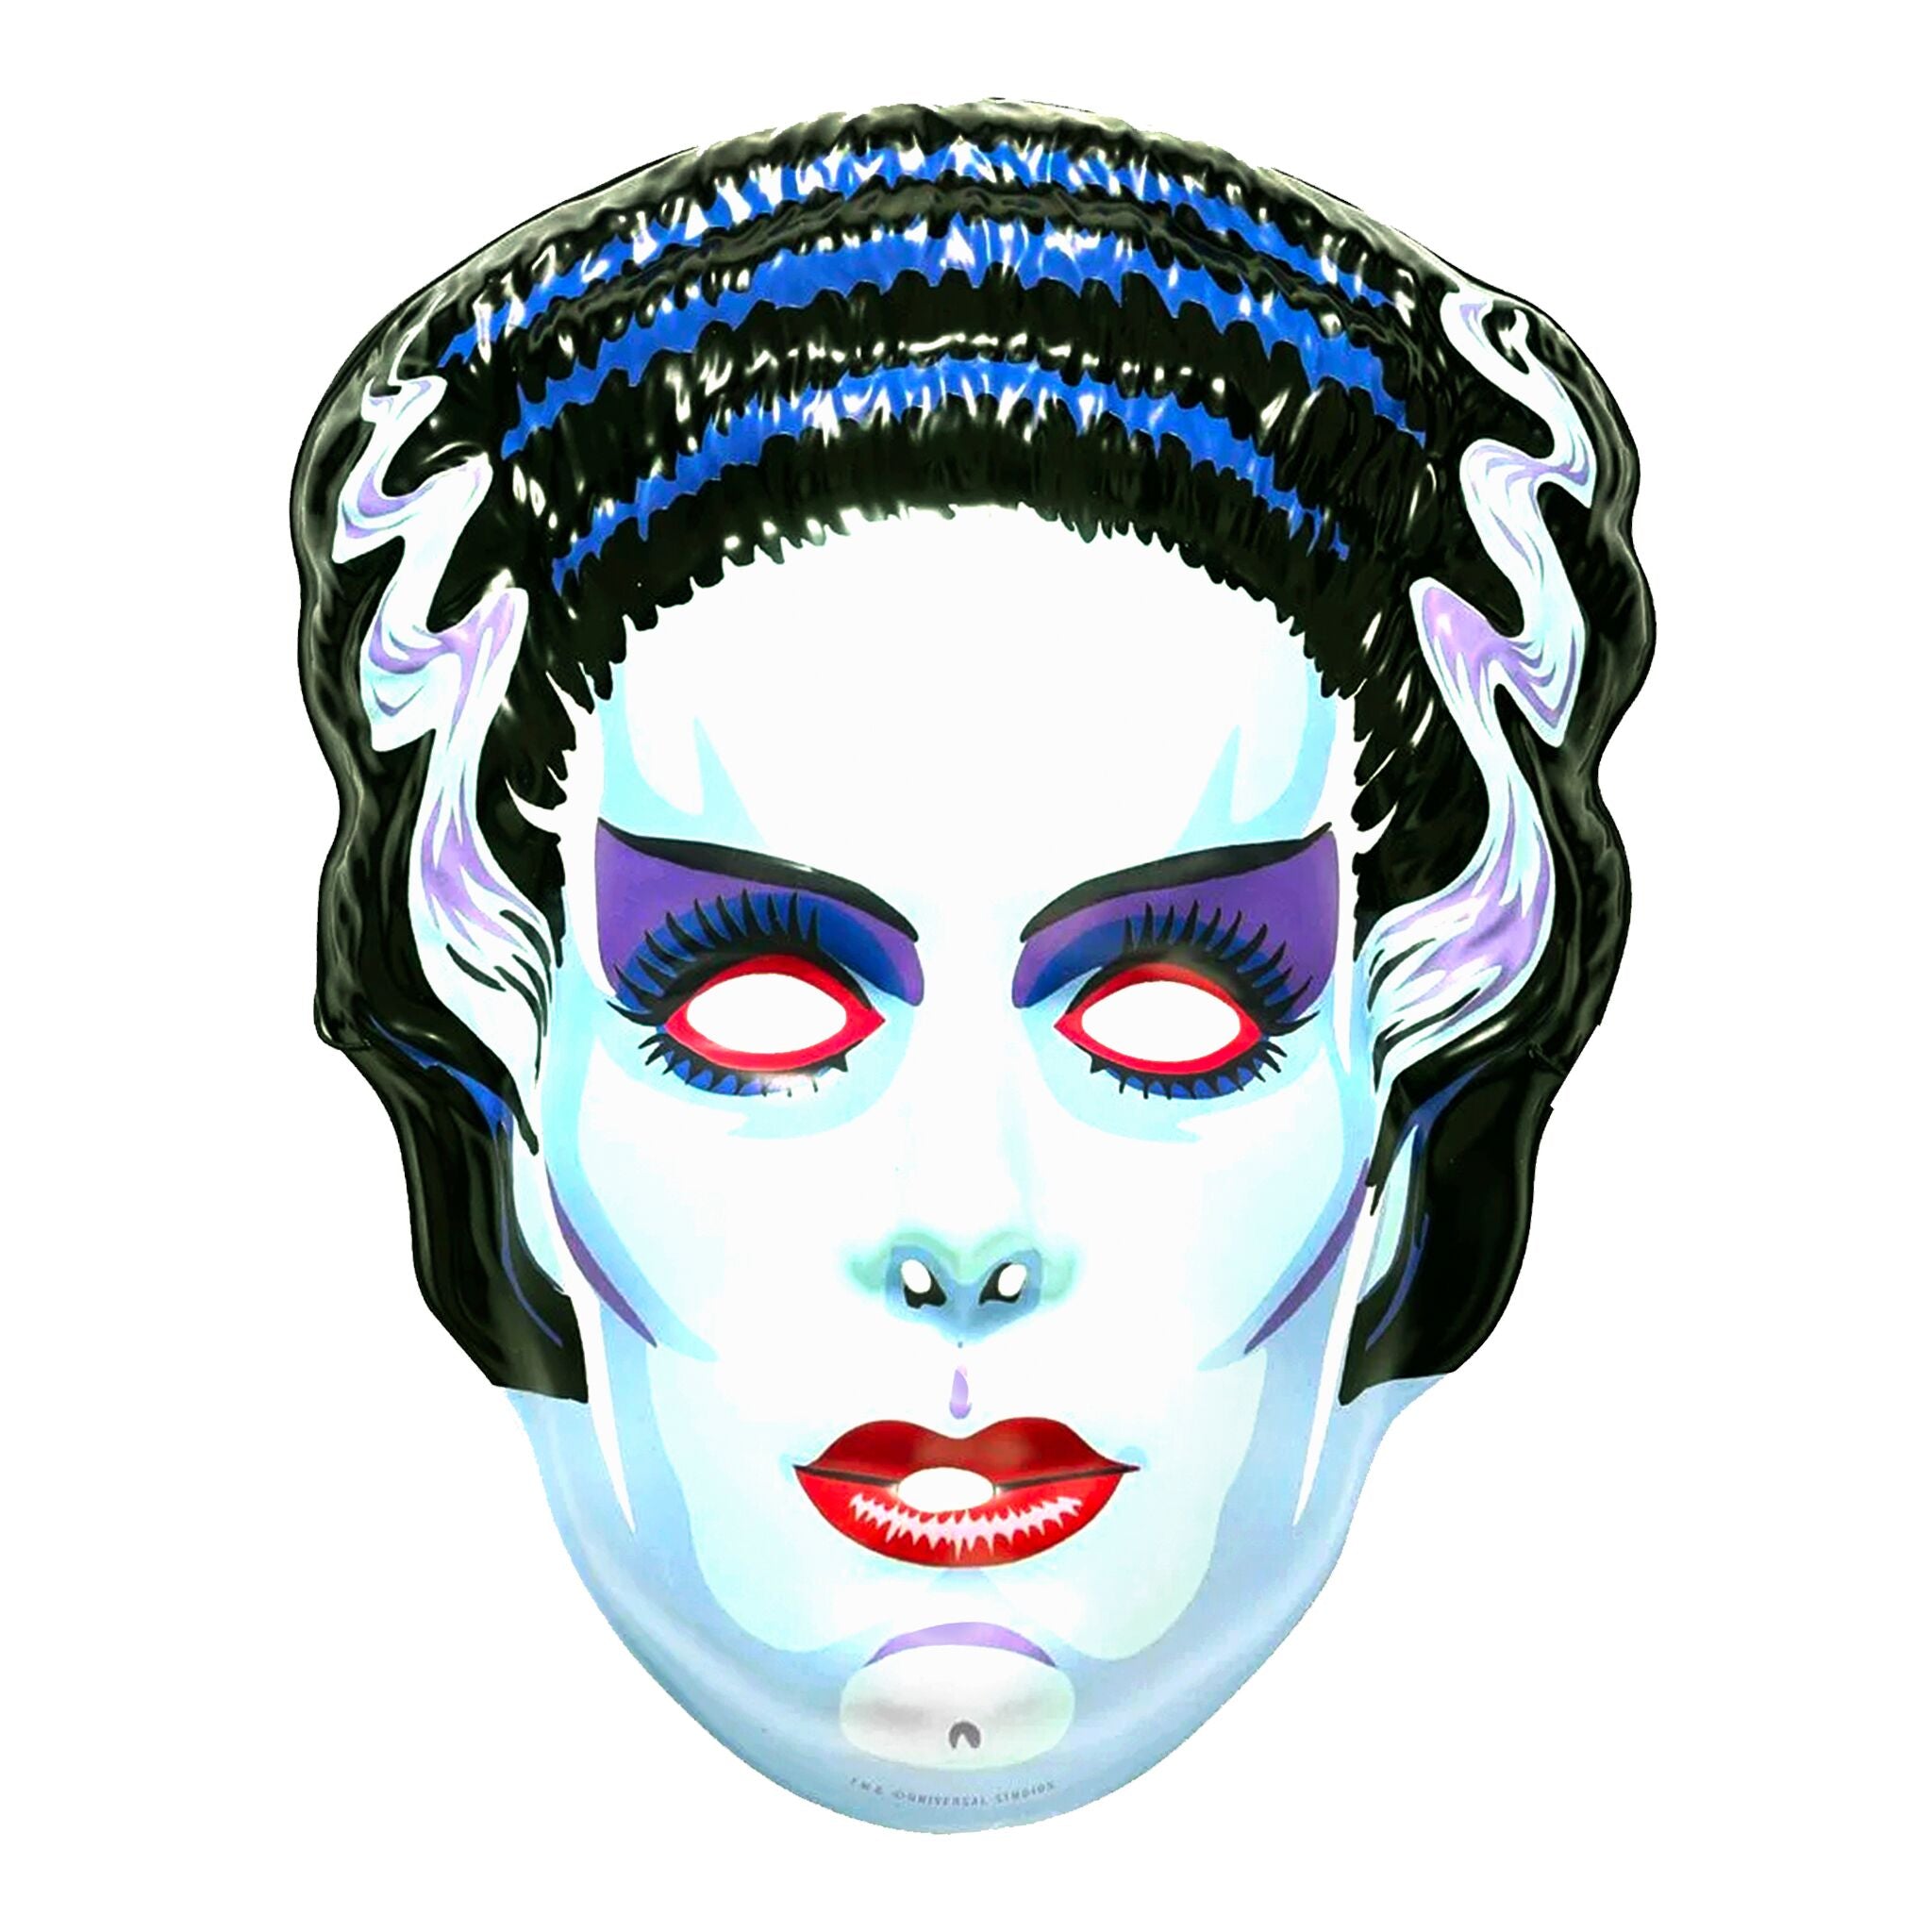 Universal Monsters Mask - Bride of Frankenstein (White)